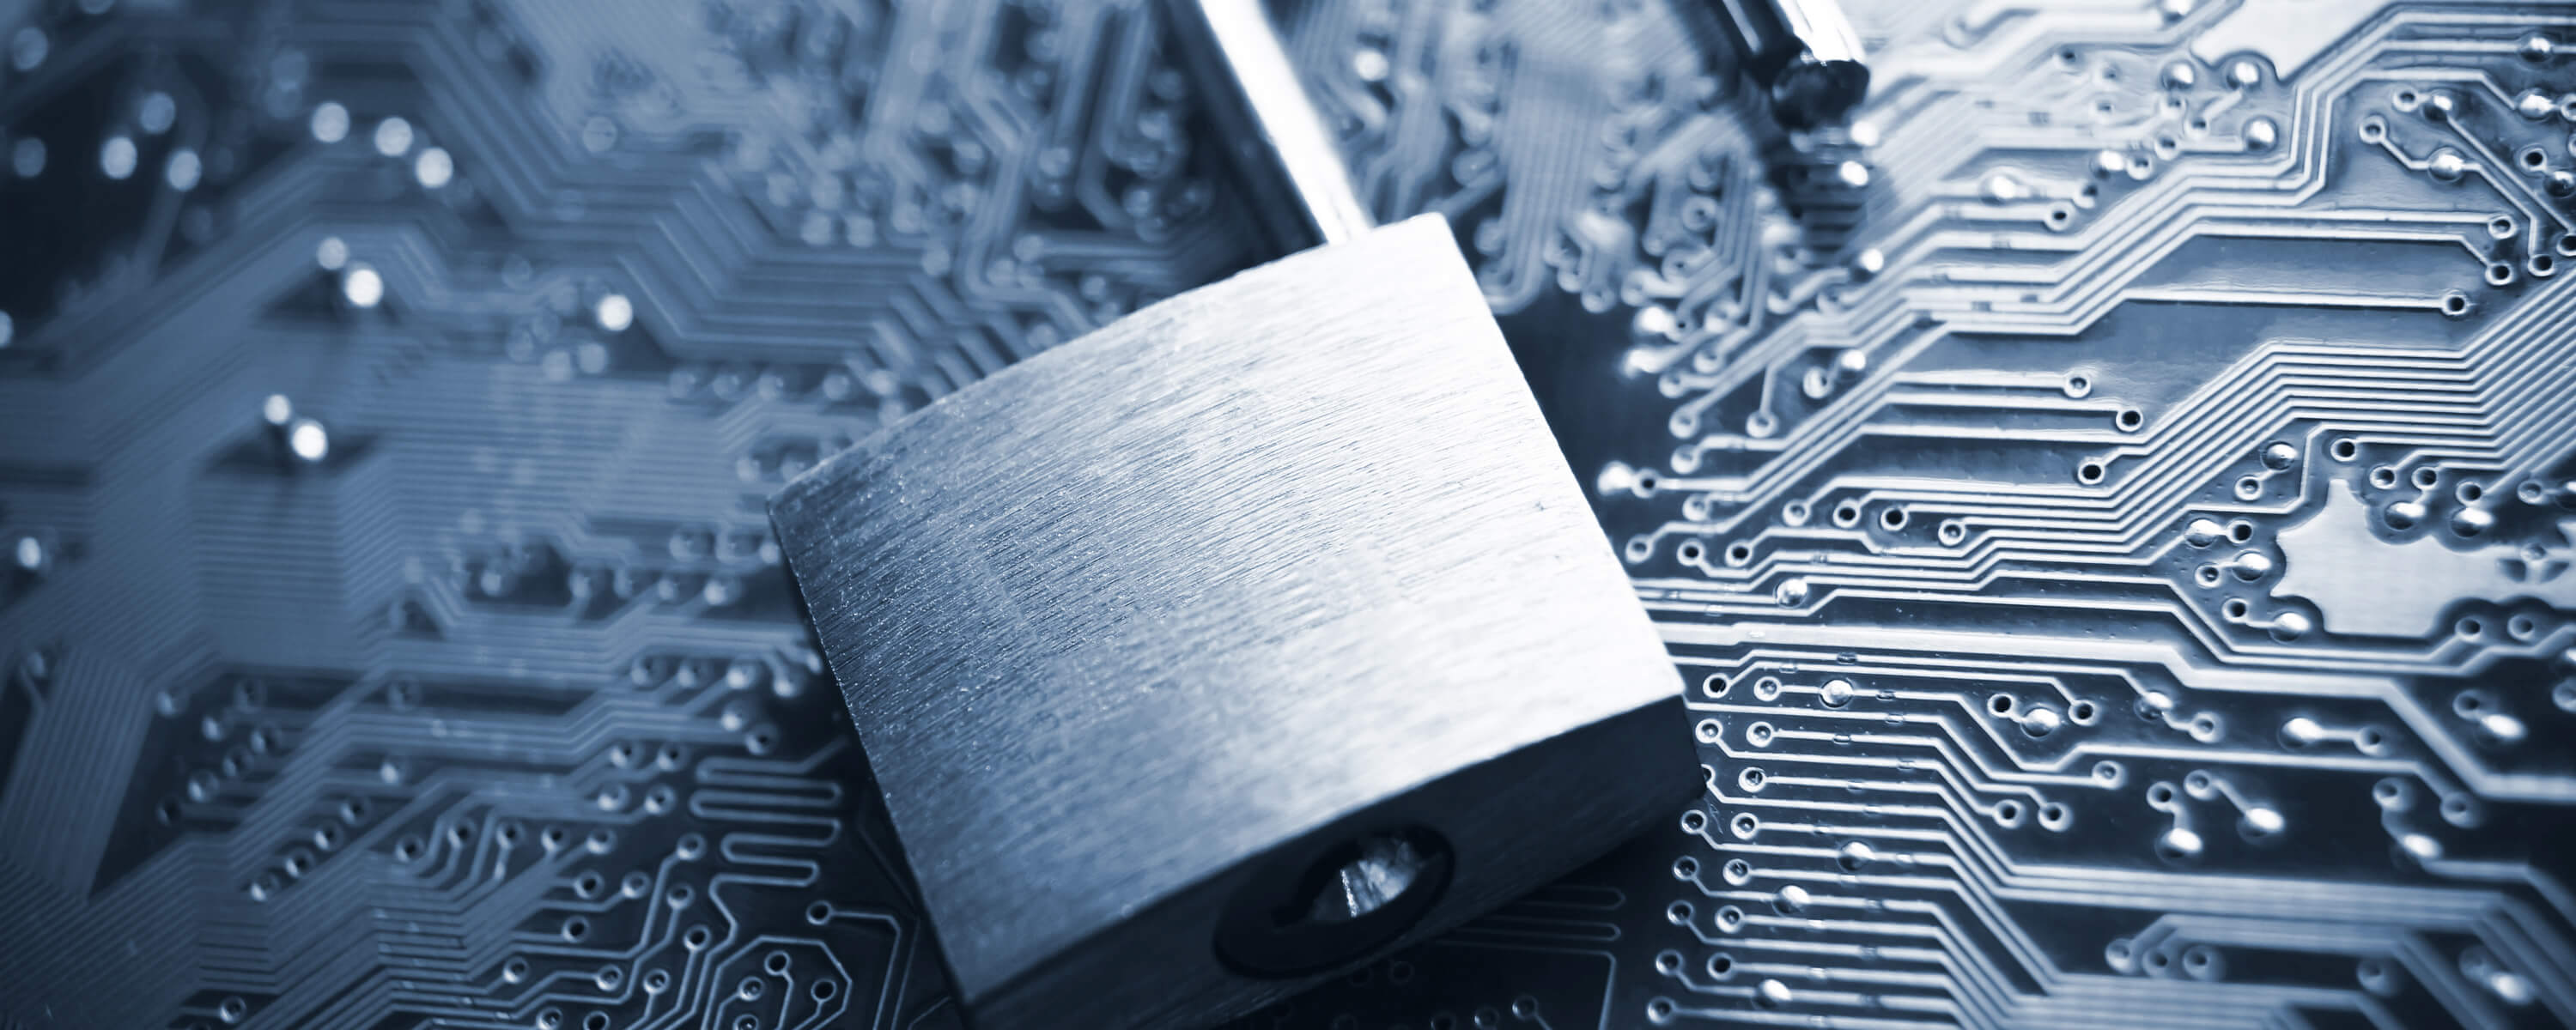 4net.ch – Ransomware – die rasante Zunahme einer Cyberbedrohung